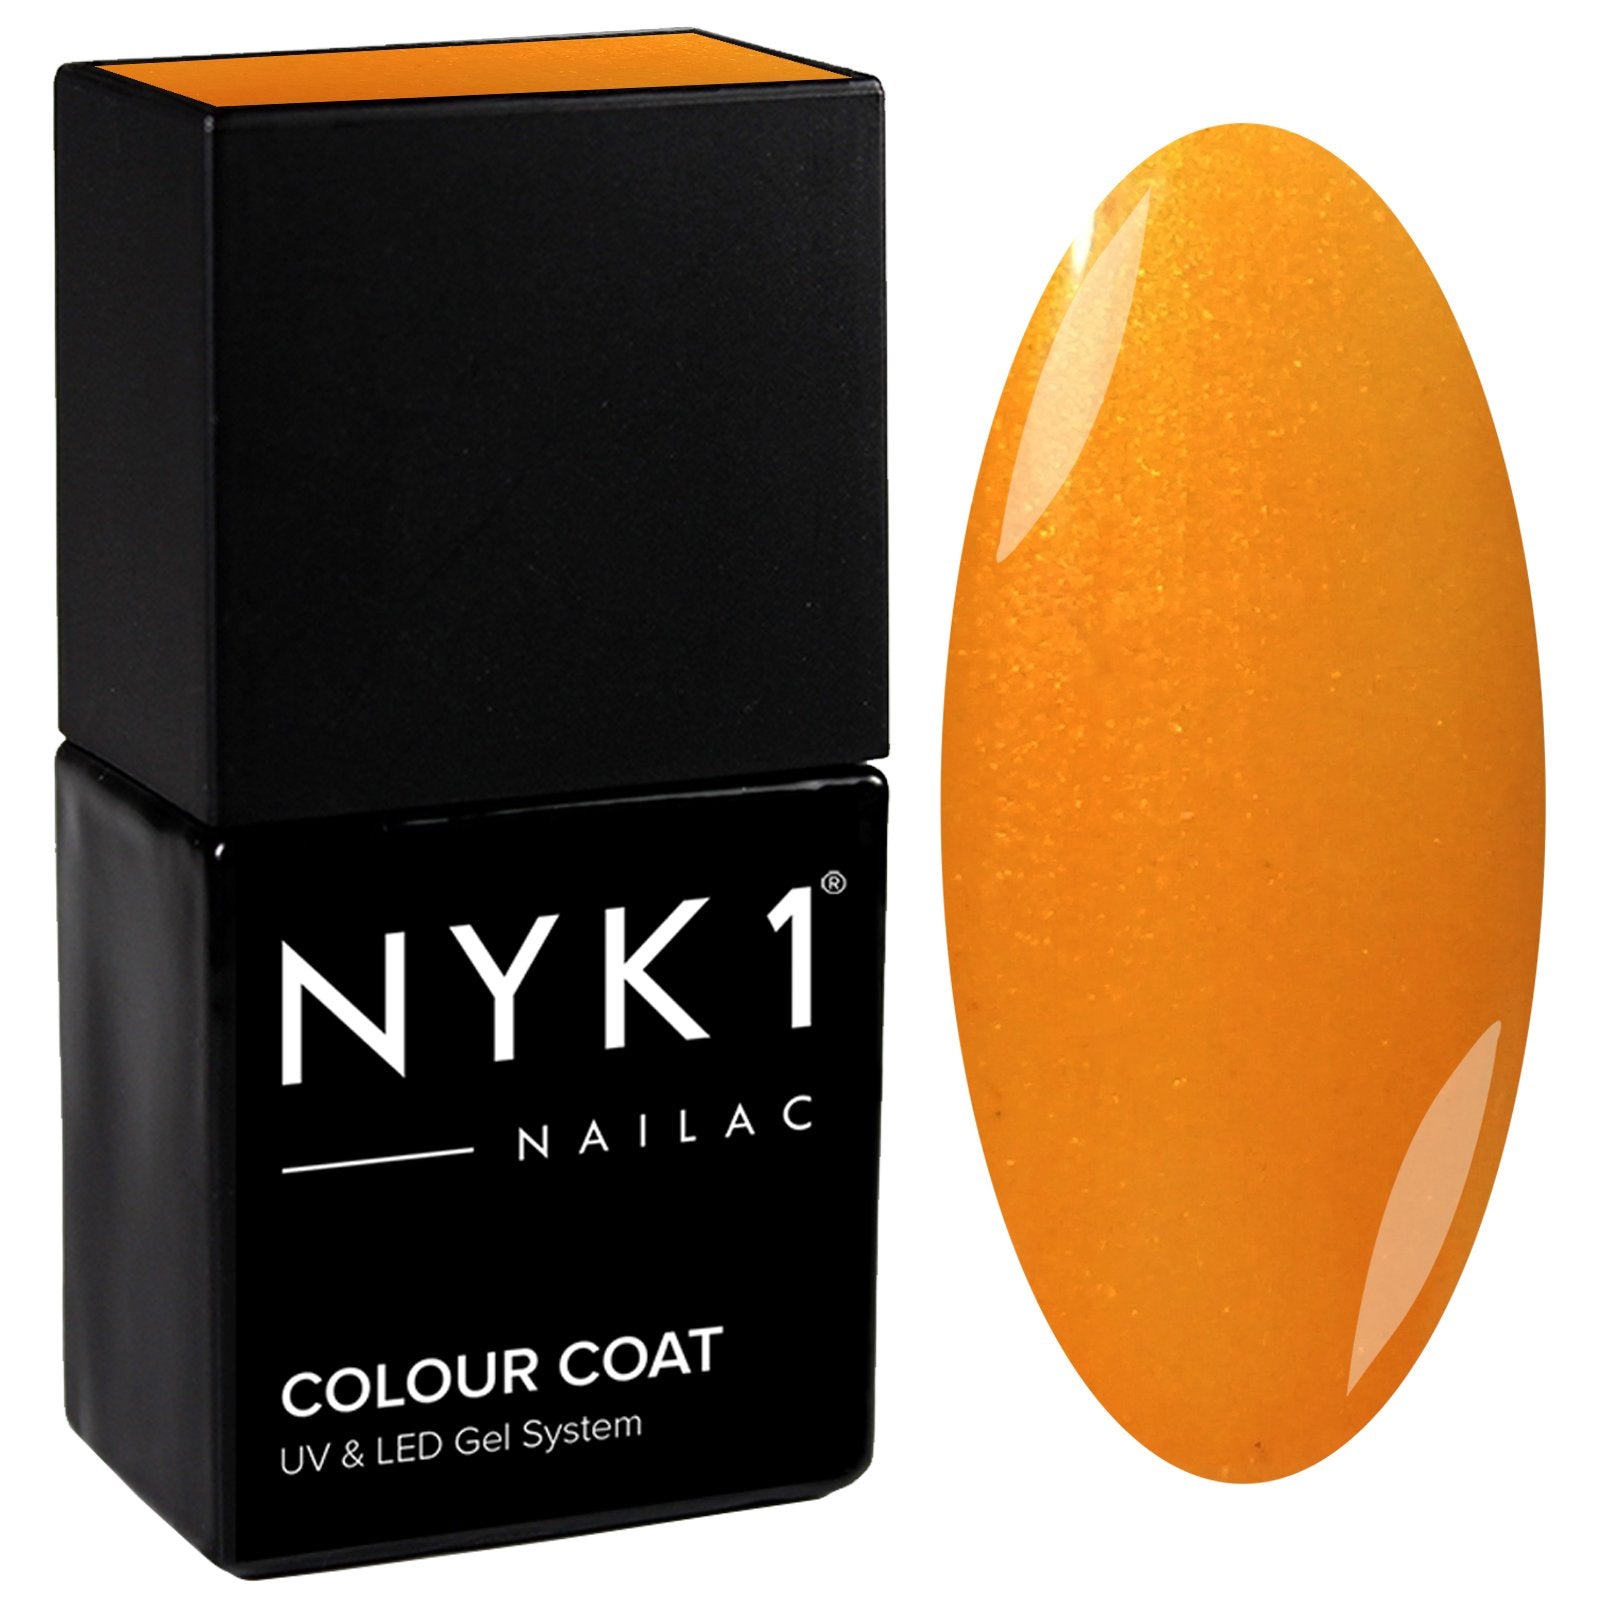 NYK1 Nailac Summer Holiday Yellow Orange Gel Nail Polish